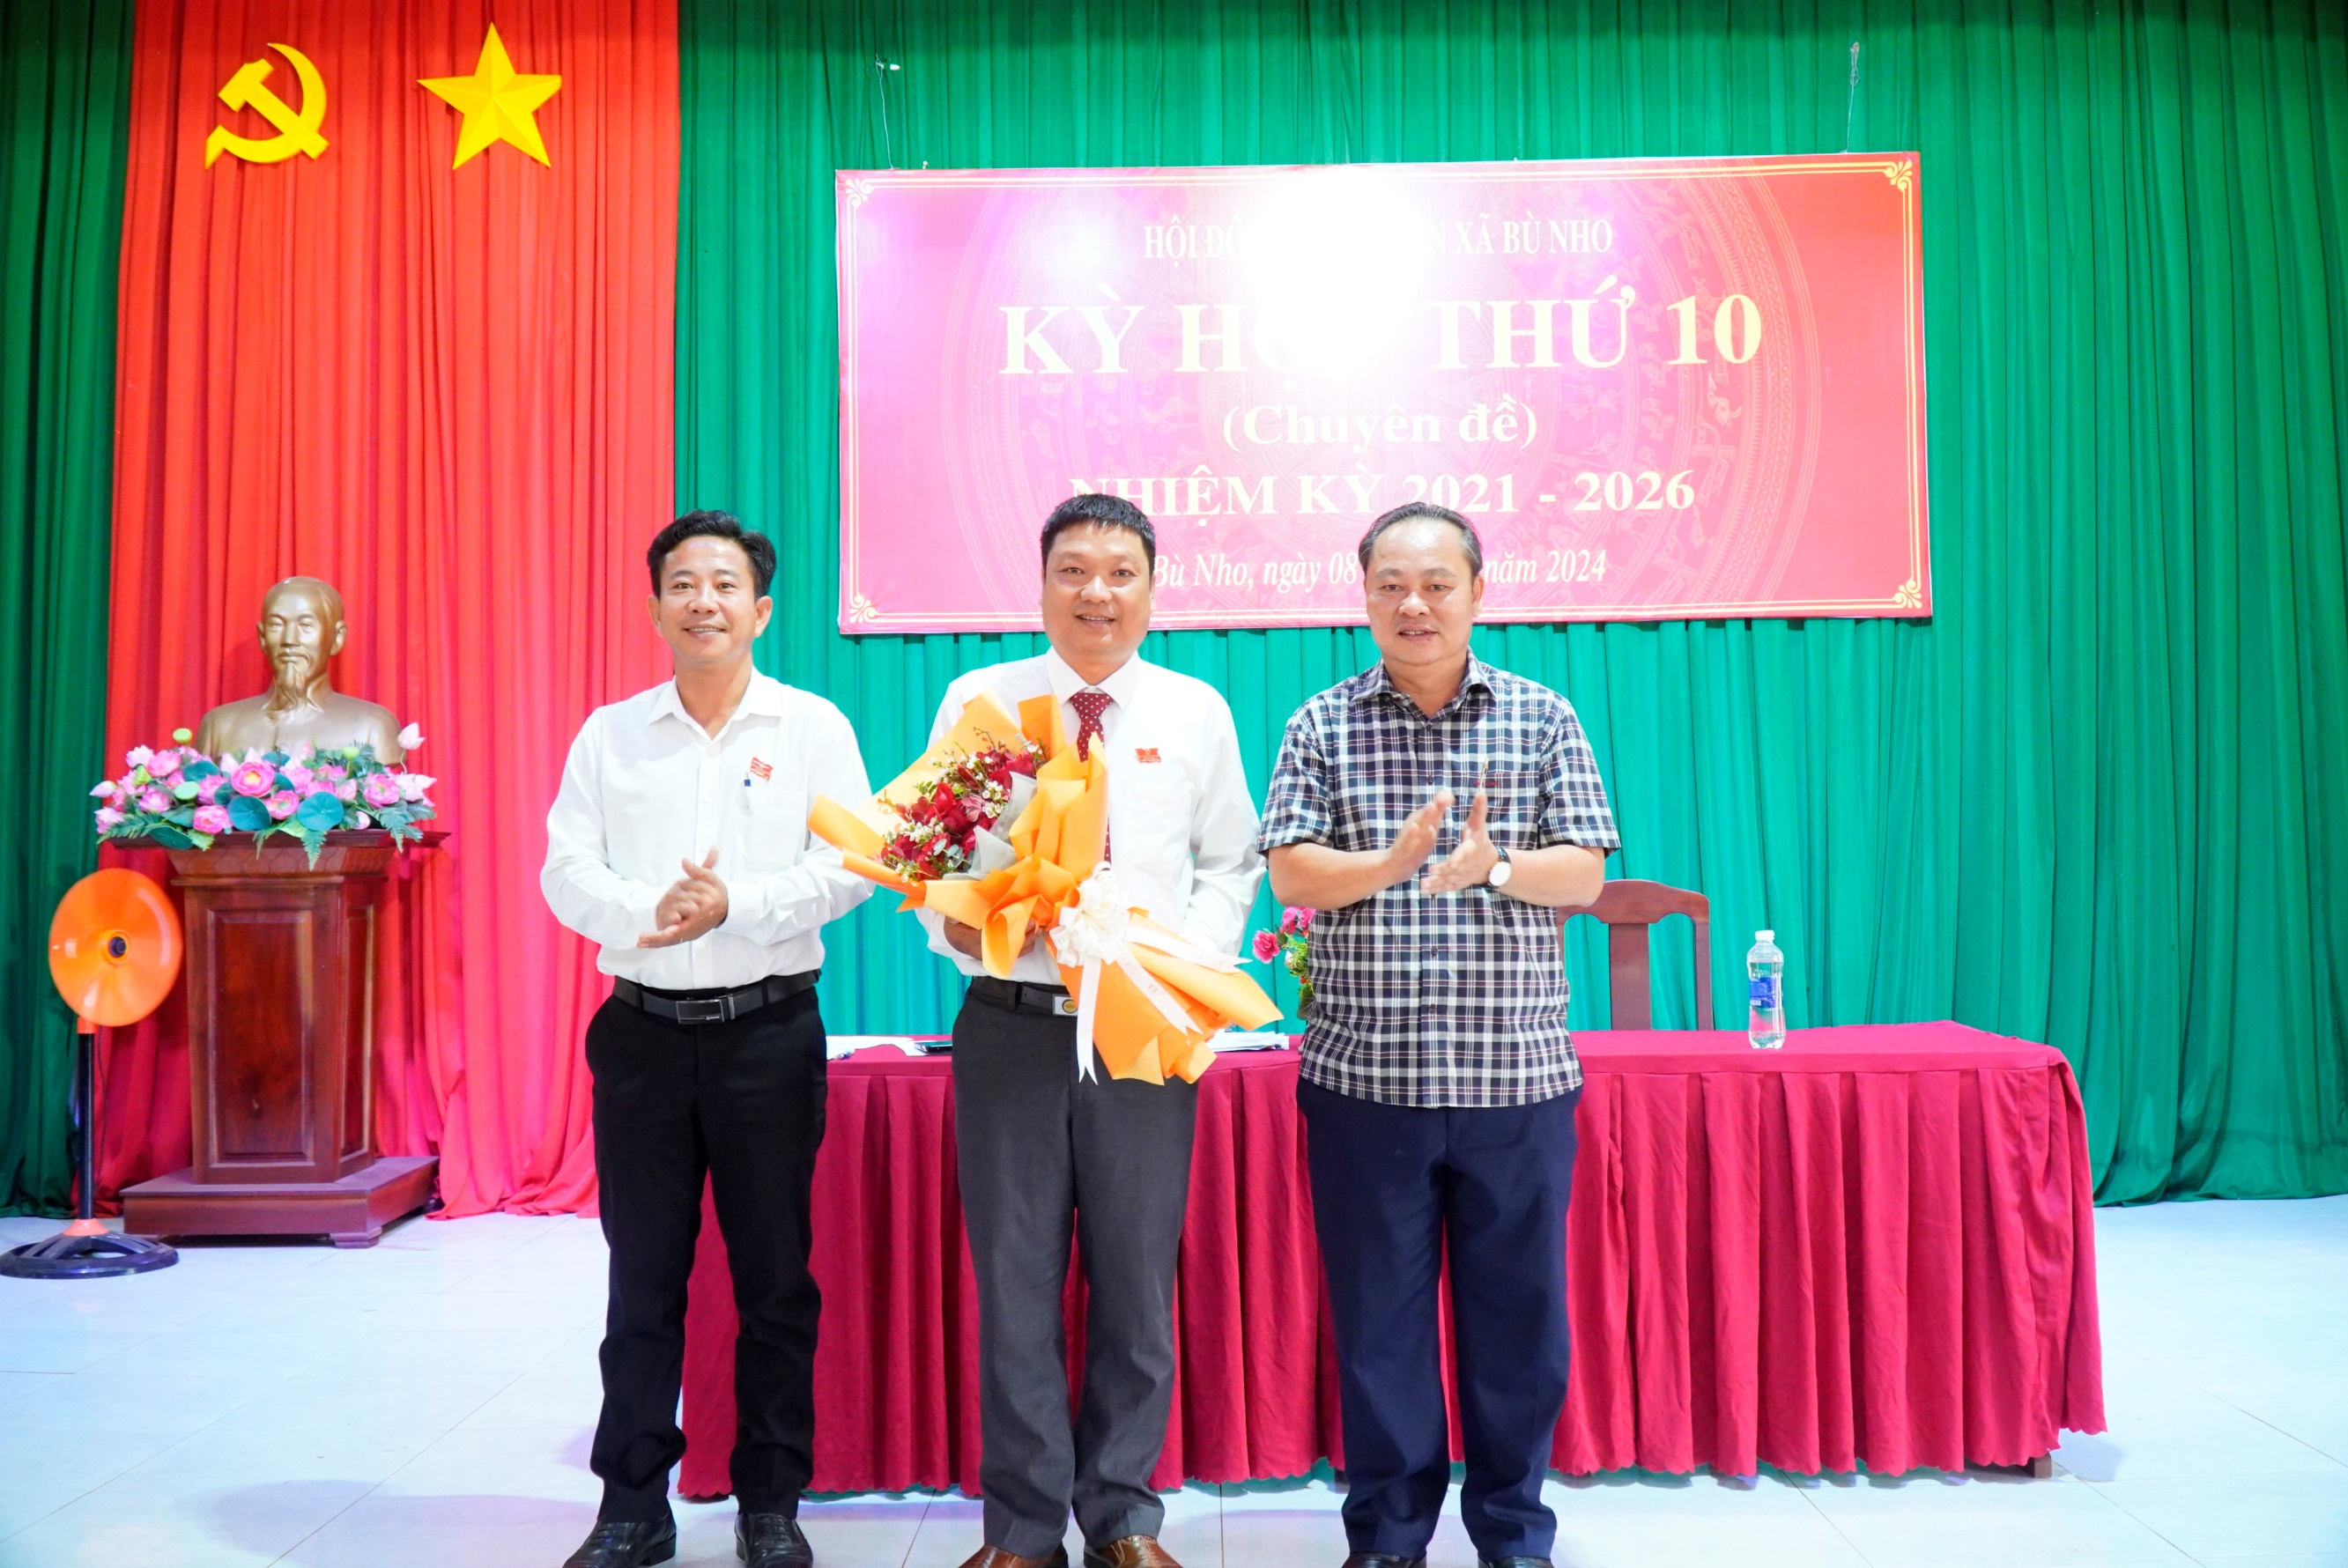 HĐND xã Bù Nho, huyện Phú Riềng tổ chức kỳ họp thứ 10, khóa XII, nhiệm kỳ 2021-2026.